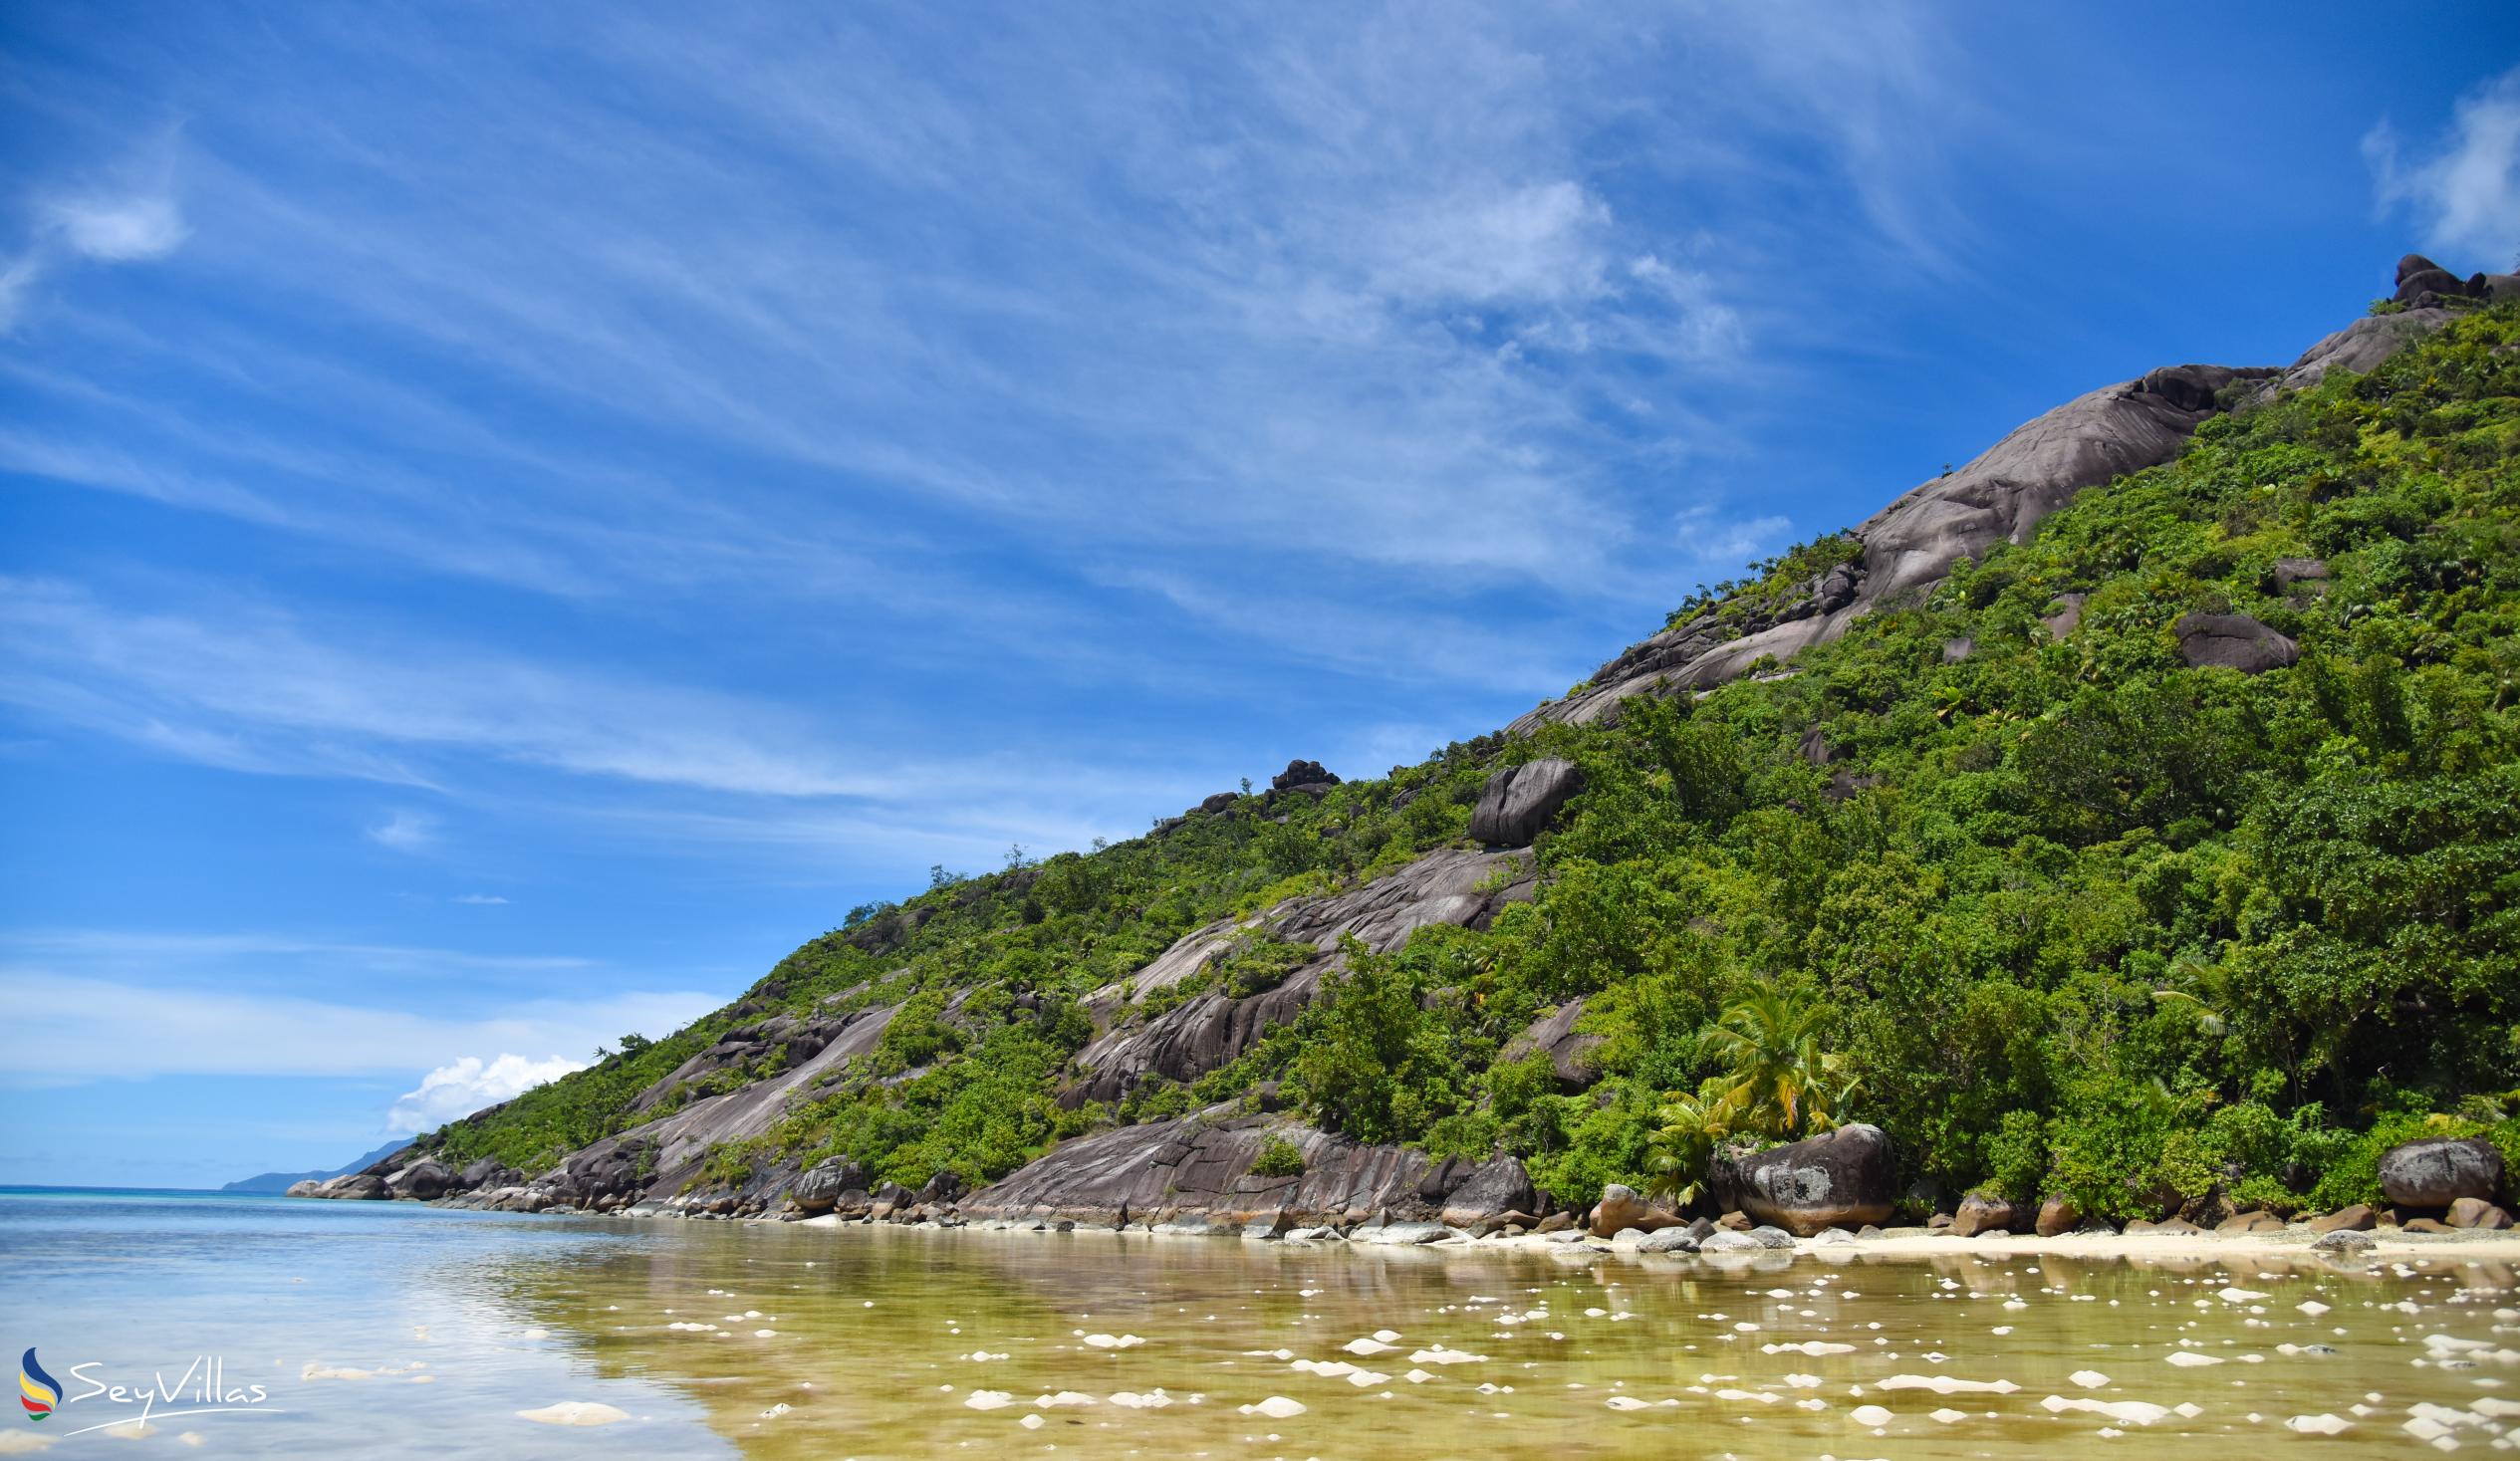 Photo 10: Baie Ternay - Mahé (Seychelles)